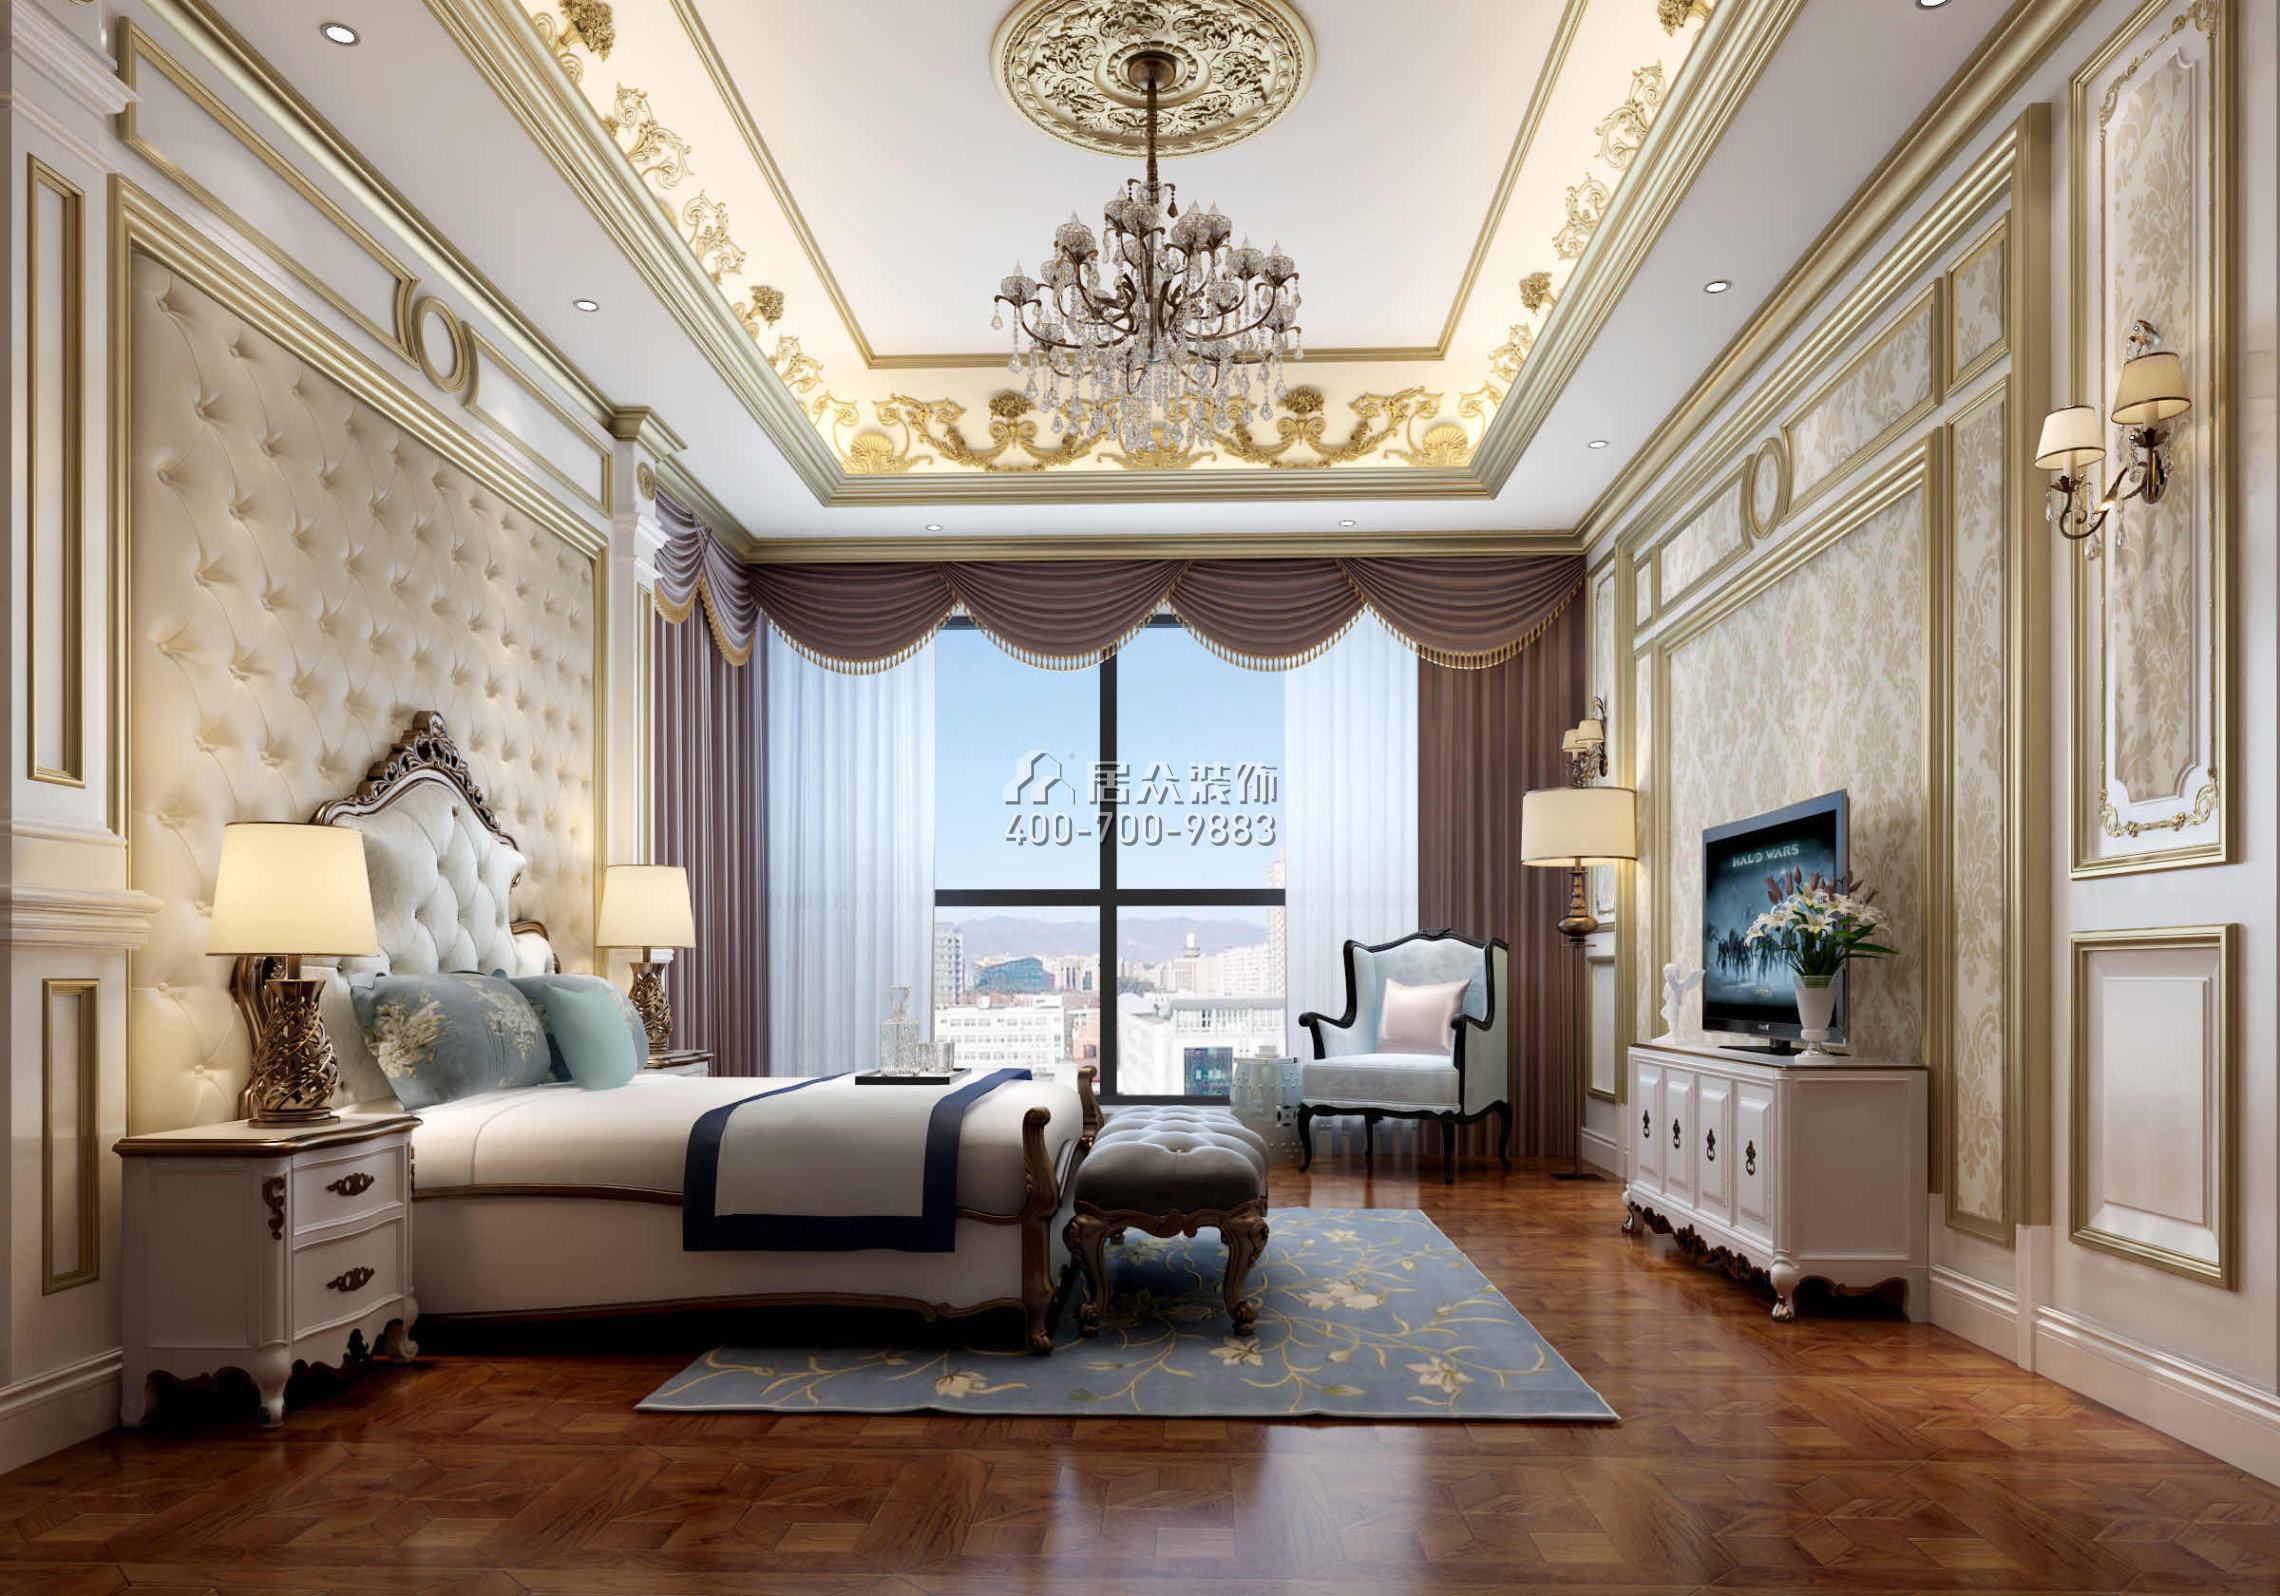 龙泉豪苑560平方米混搭风格平层户型卧室装修效果图